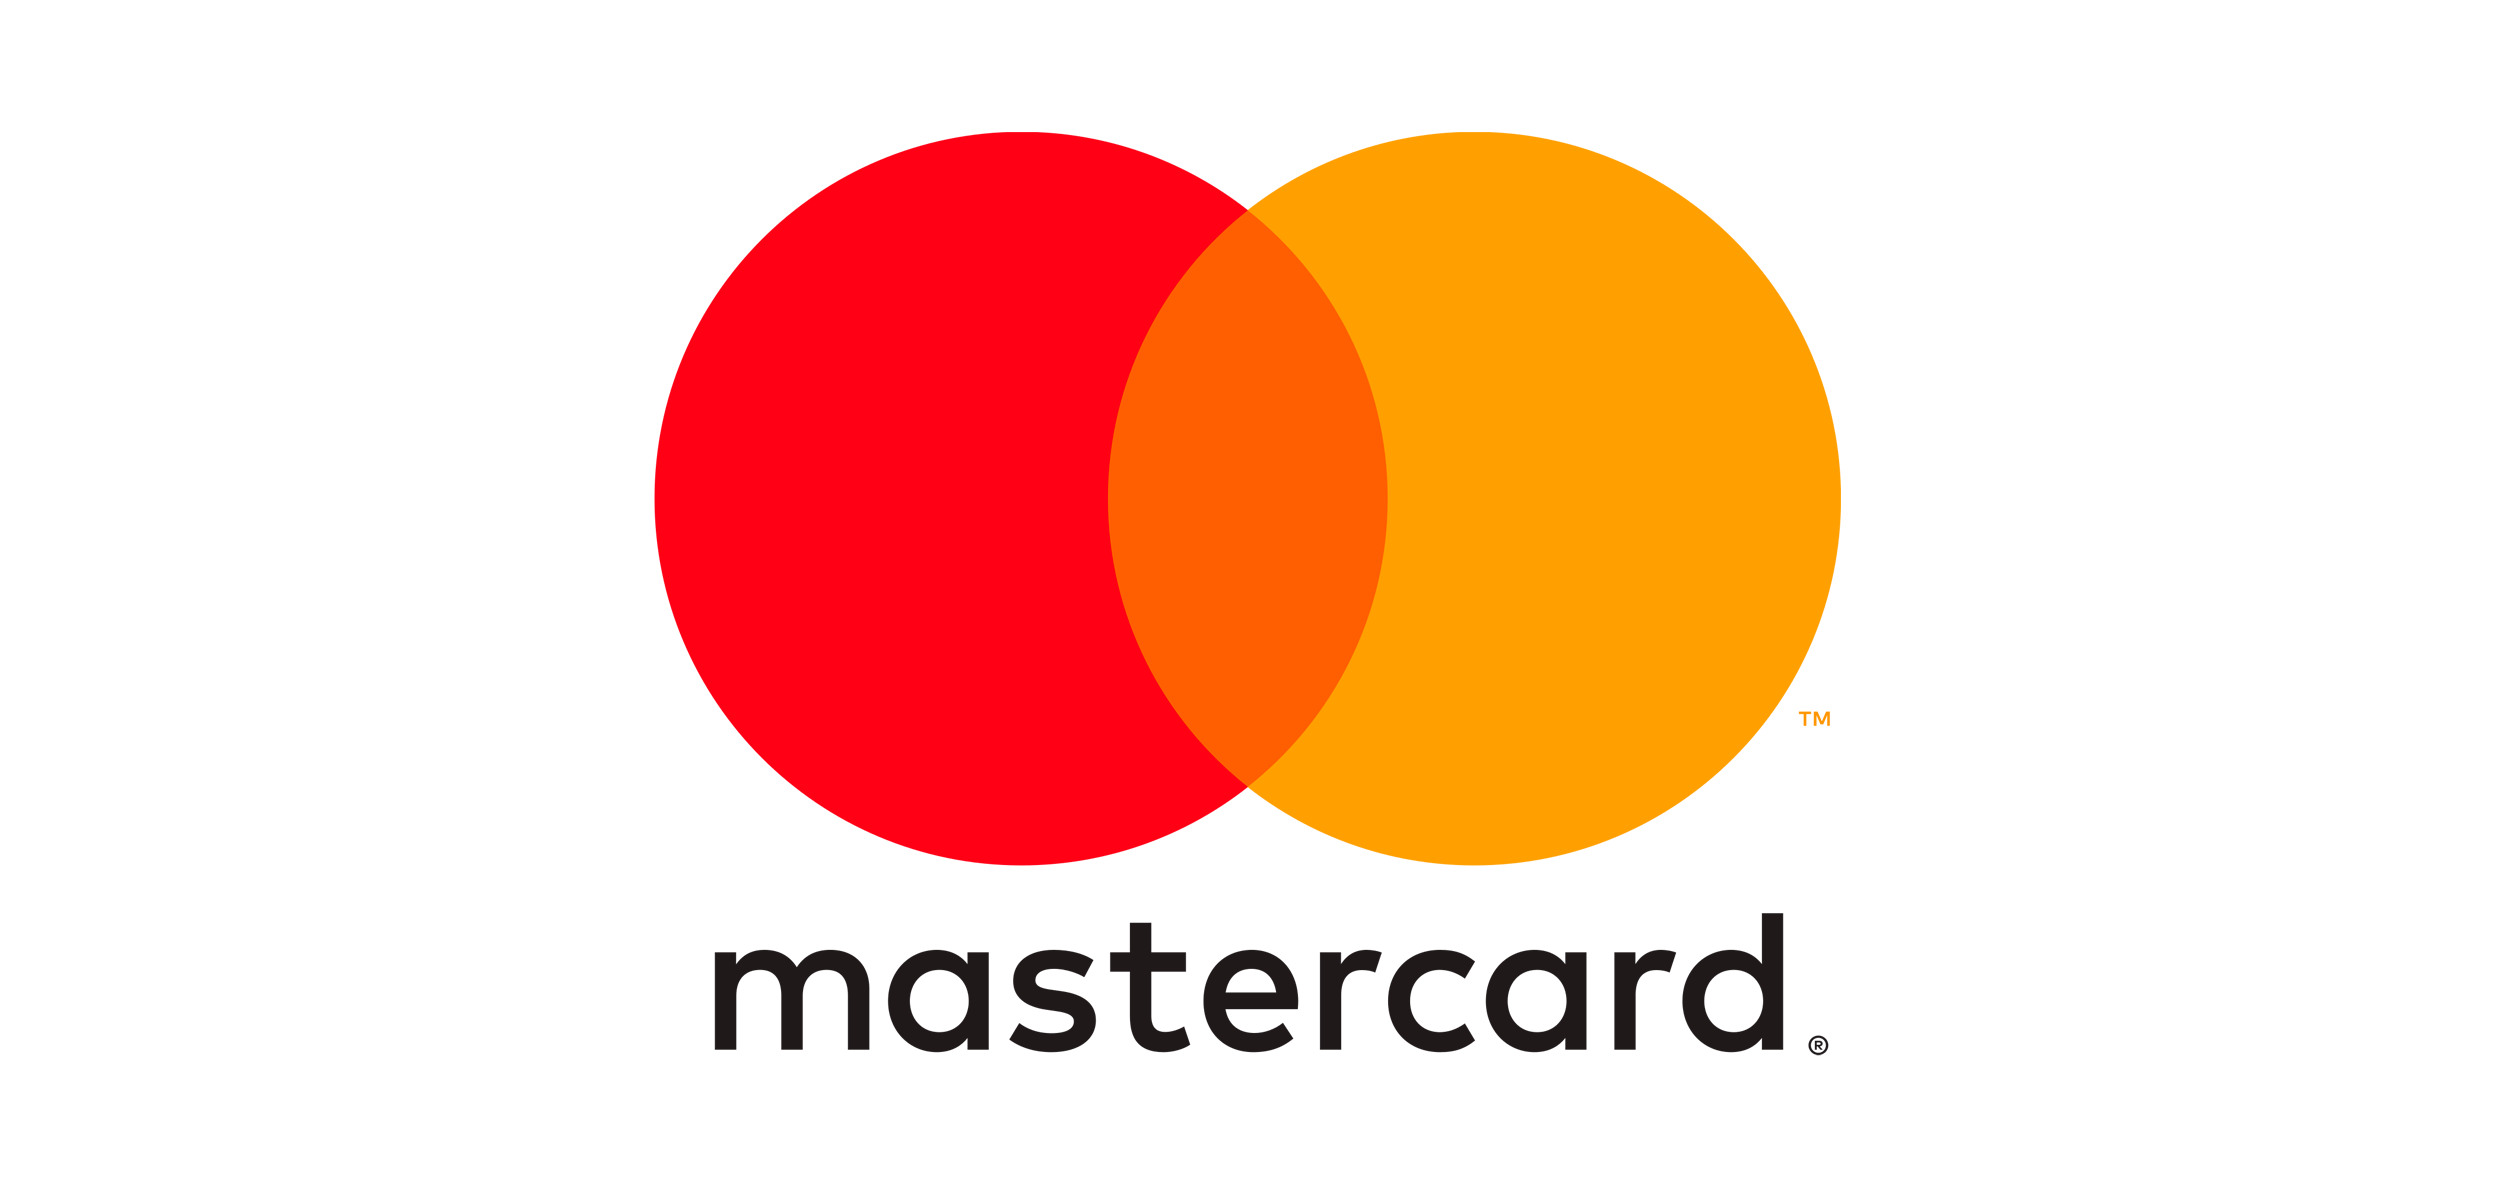 'Compre agora, pague depois': Mastercard lança promoção sem juros